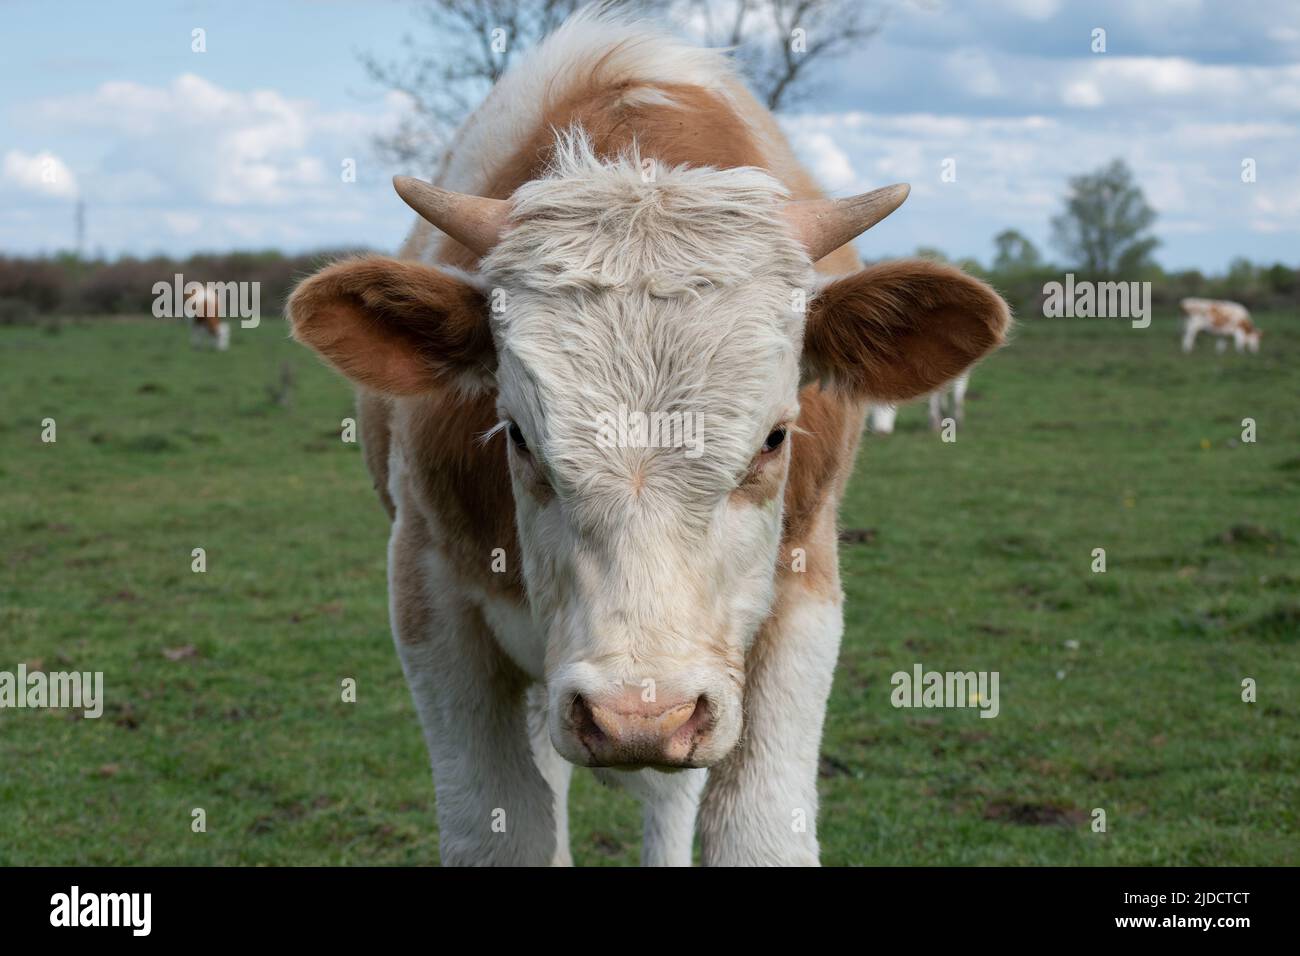 Primer plano cabeza de vaca con cuernos pequeños, parte del cuerpo de animales domésticos con nariz húmeda al aire libre, pelo naranja y blanco Foto de stock